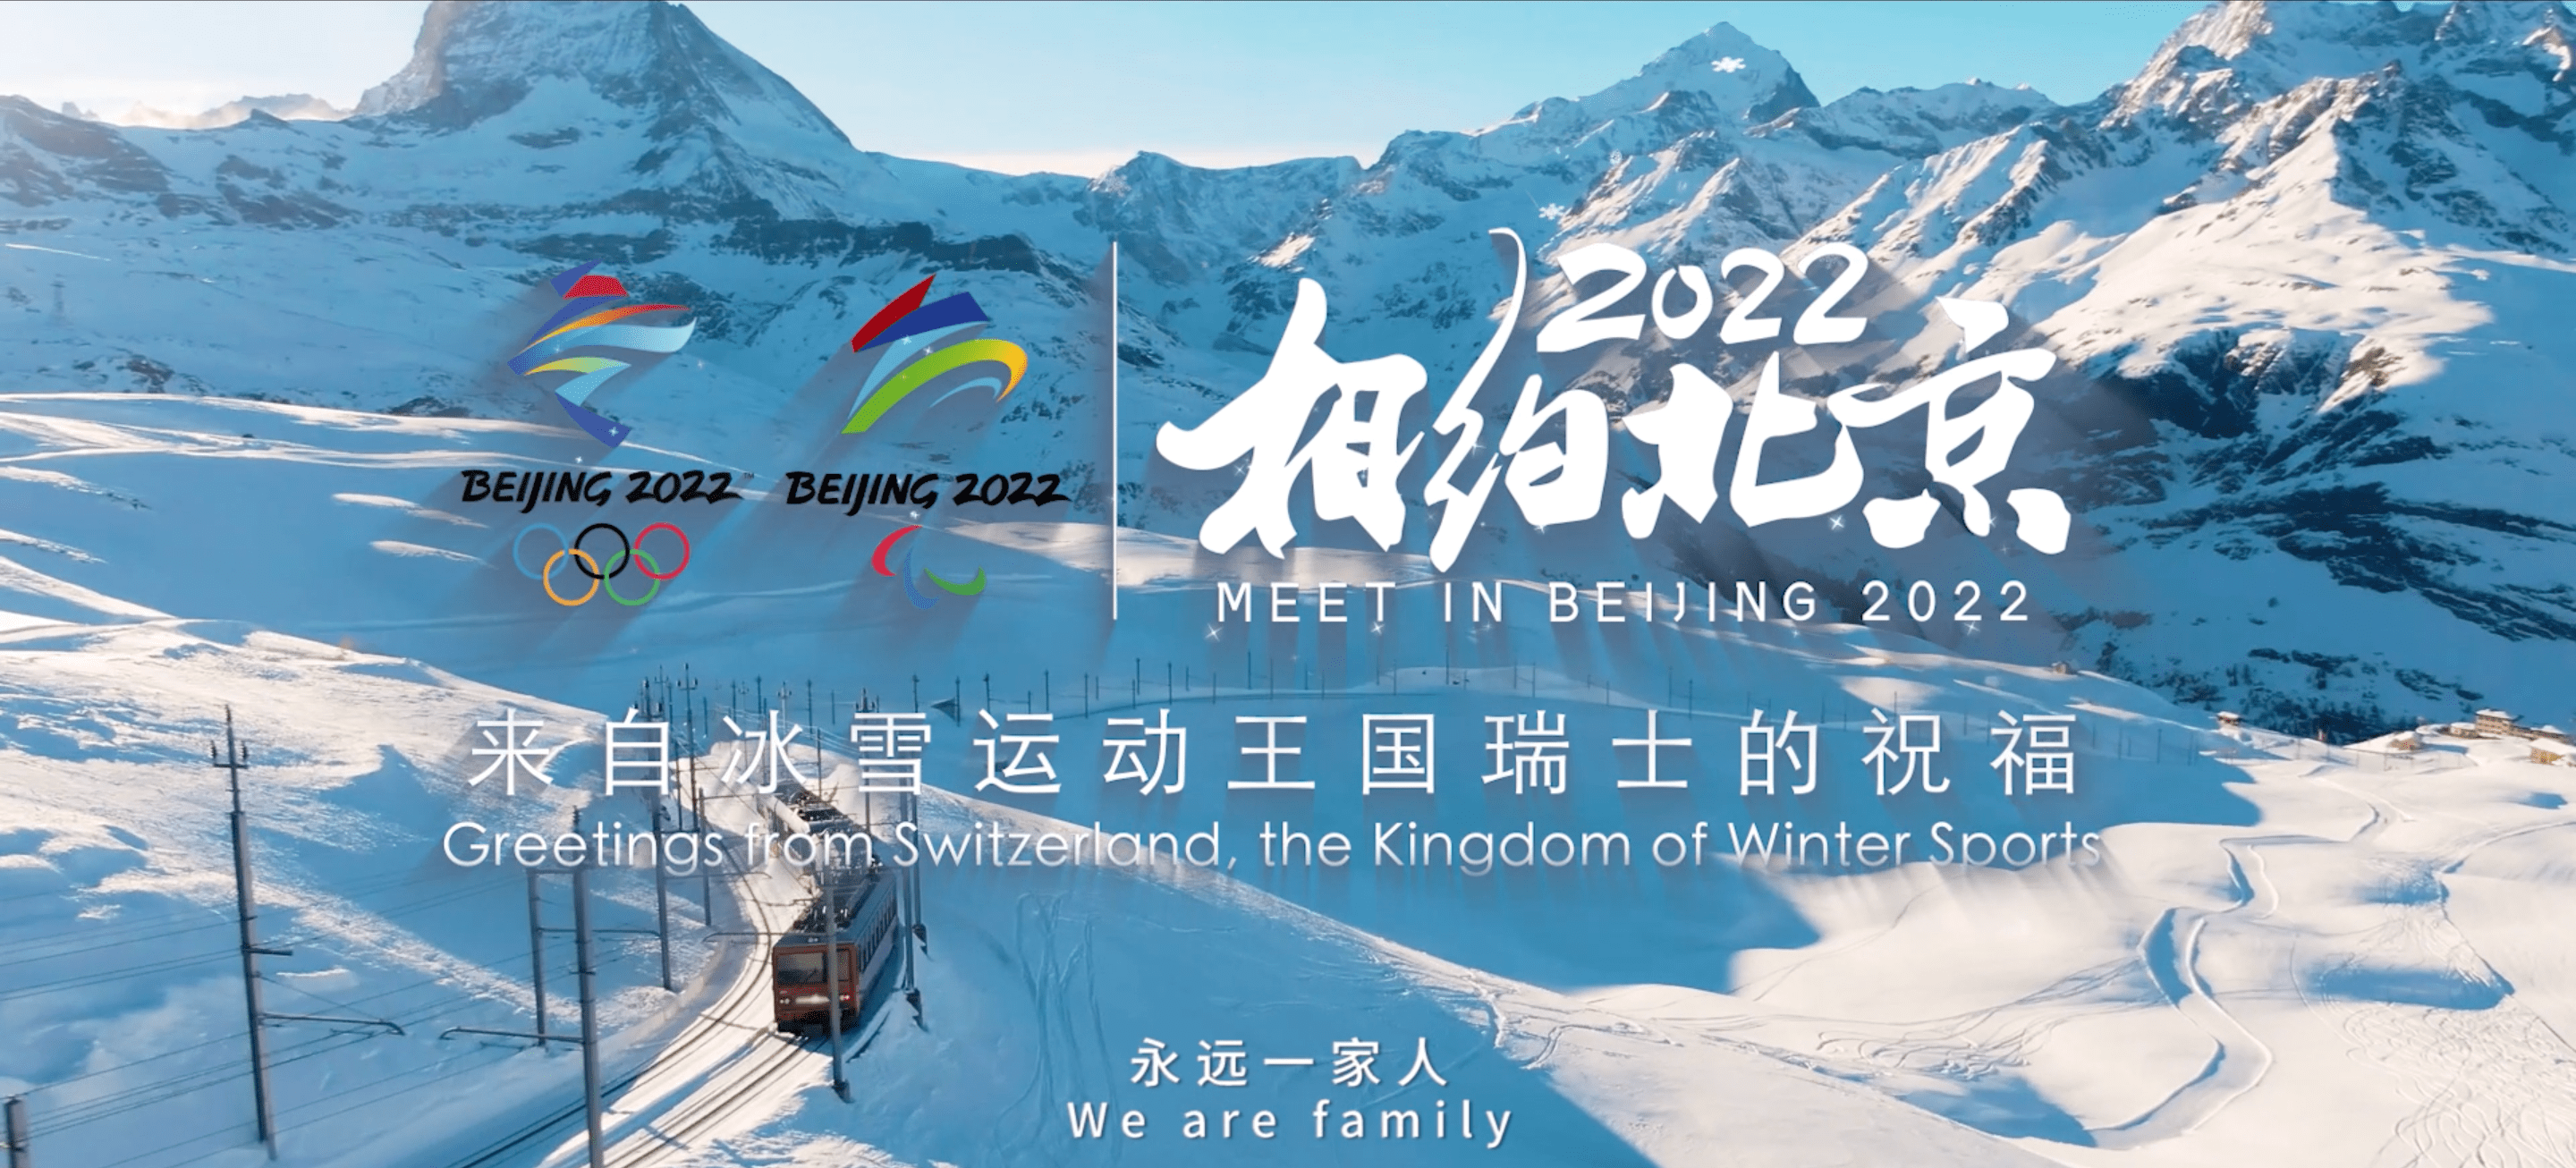 国际在线消息(记者 张婧昊):在2022年北京冬奥会日益临近之际,中国驻